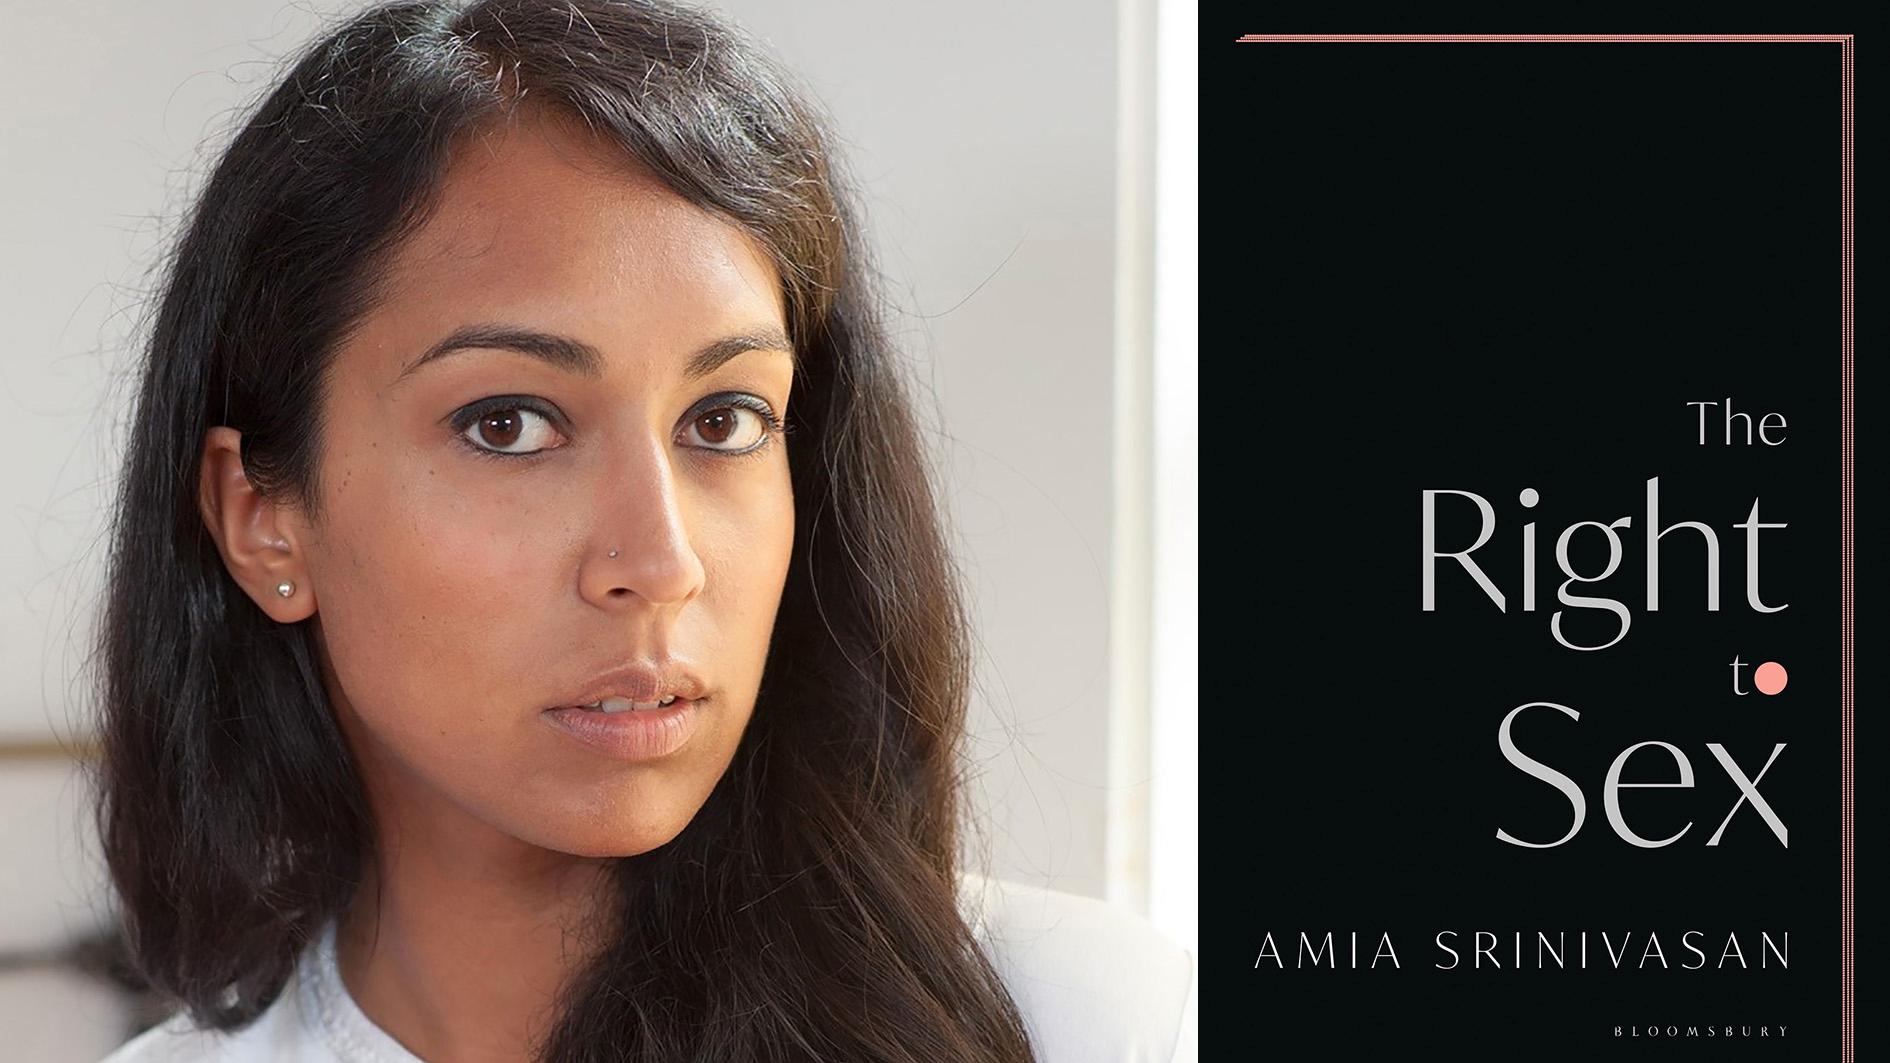 Amia Srinivasan (född 1984) är professor i social och politisk teori i Oxford. ”The Right to Sex” är en samling essäer som utkom tidigare i år.